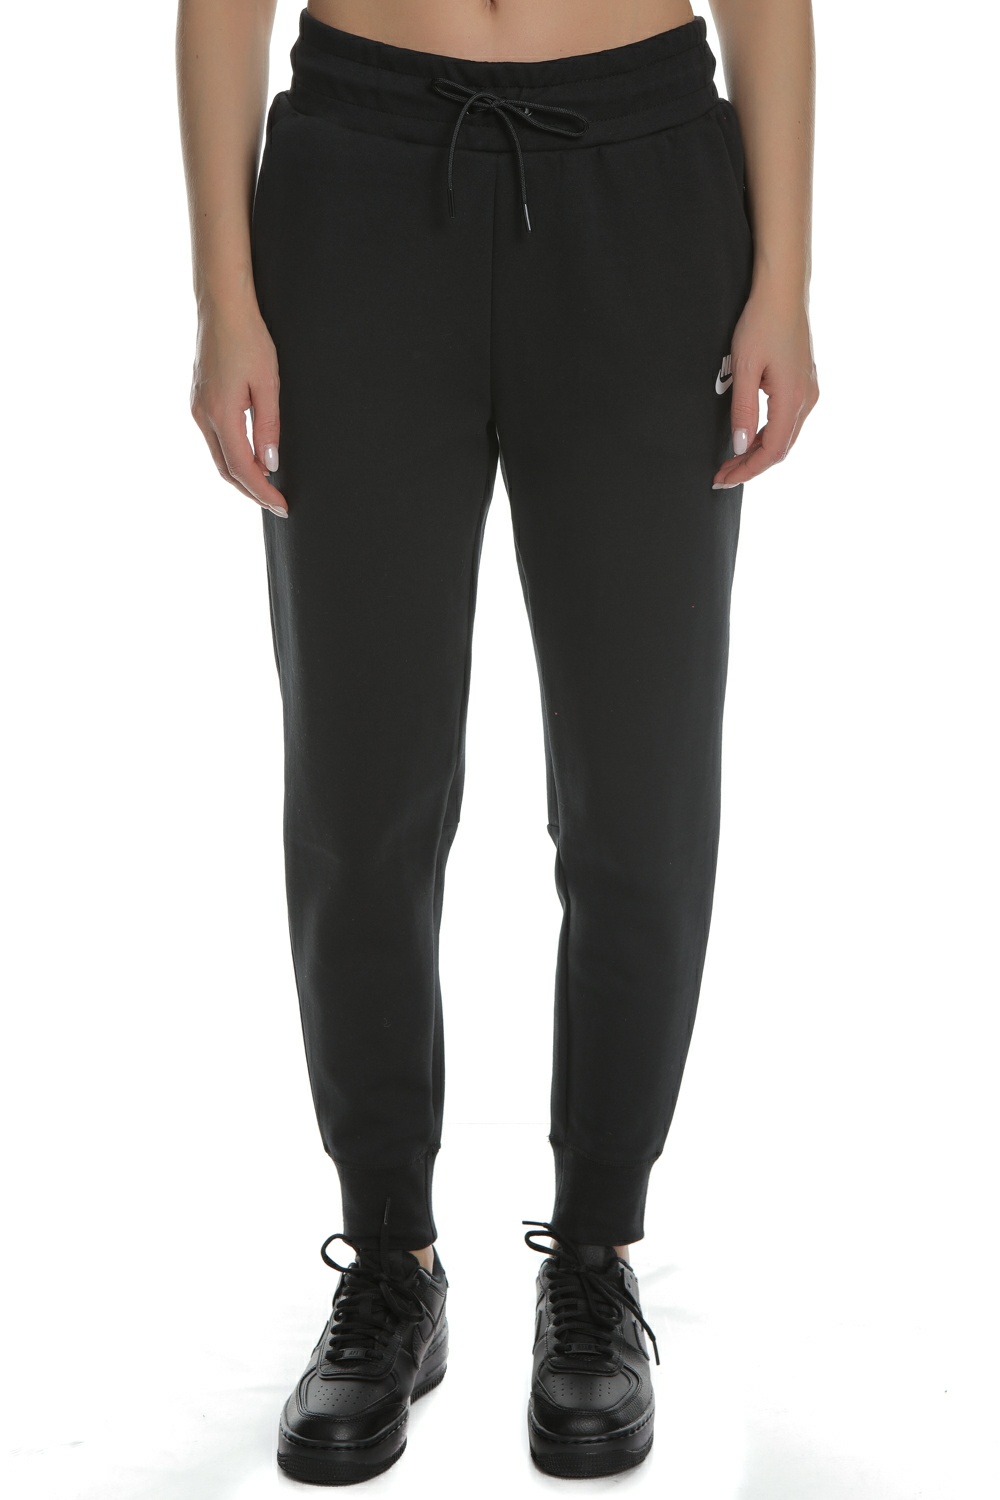 Γυναικεία/Ρούχα/Αθλητικά/Φόρμες NIKE - Γυναικείο παντελόνι φόρμας NIKE Sportswear Tech μαύρο